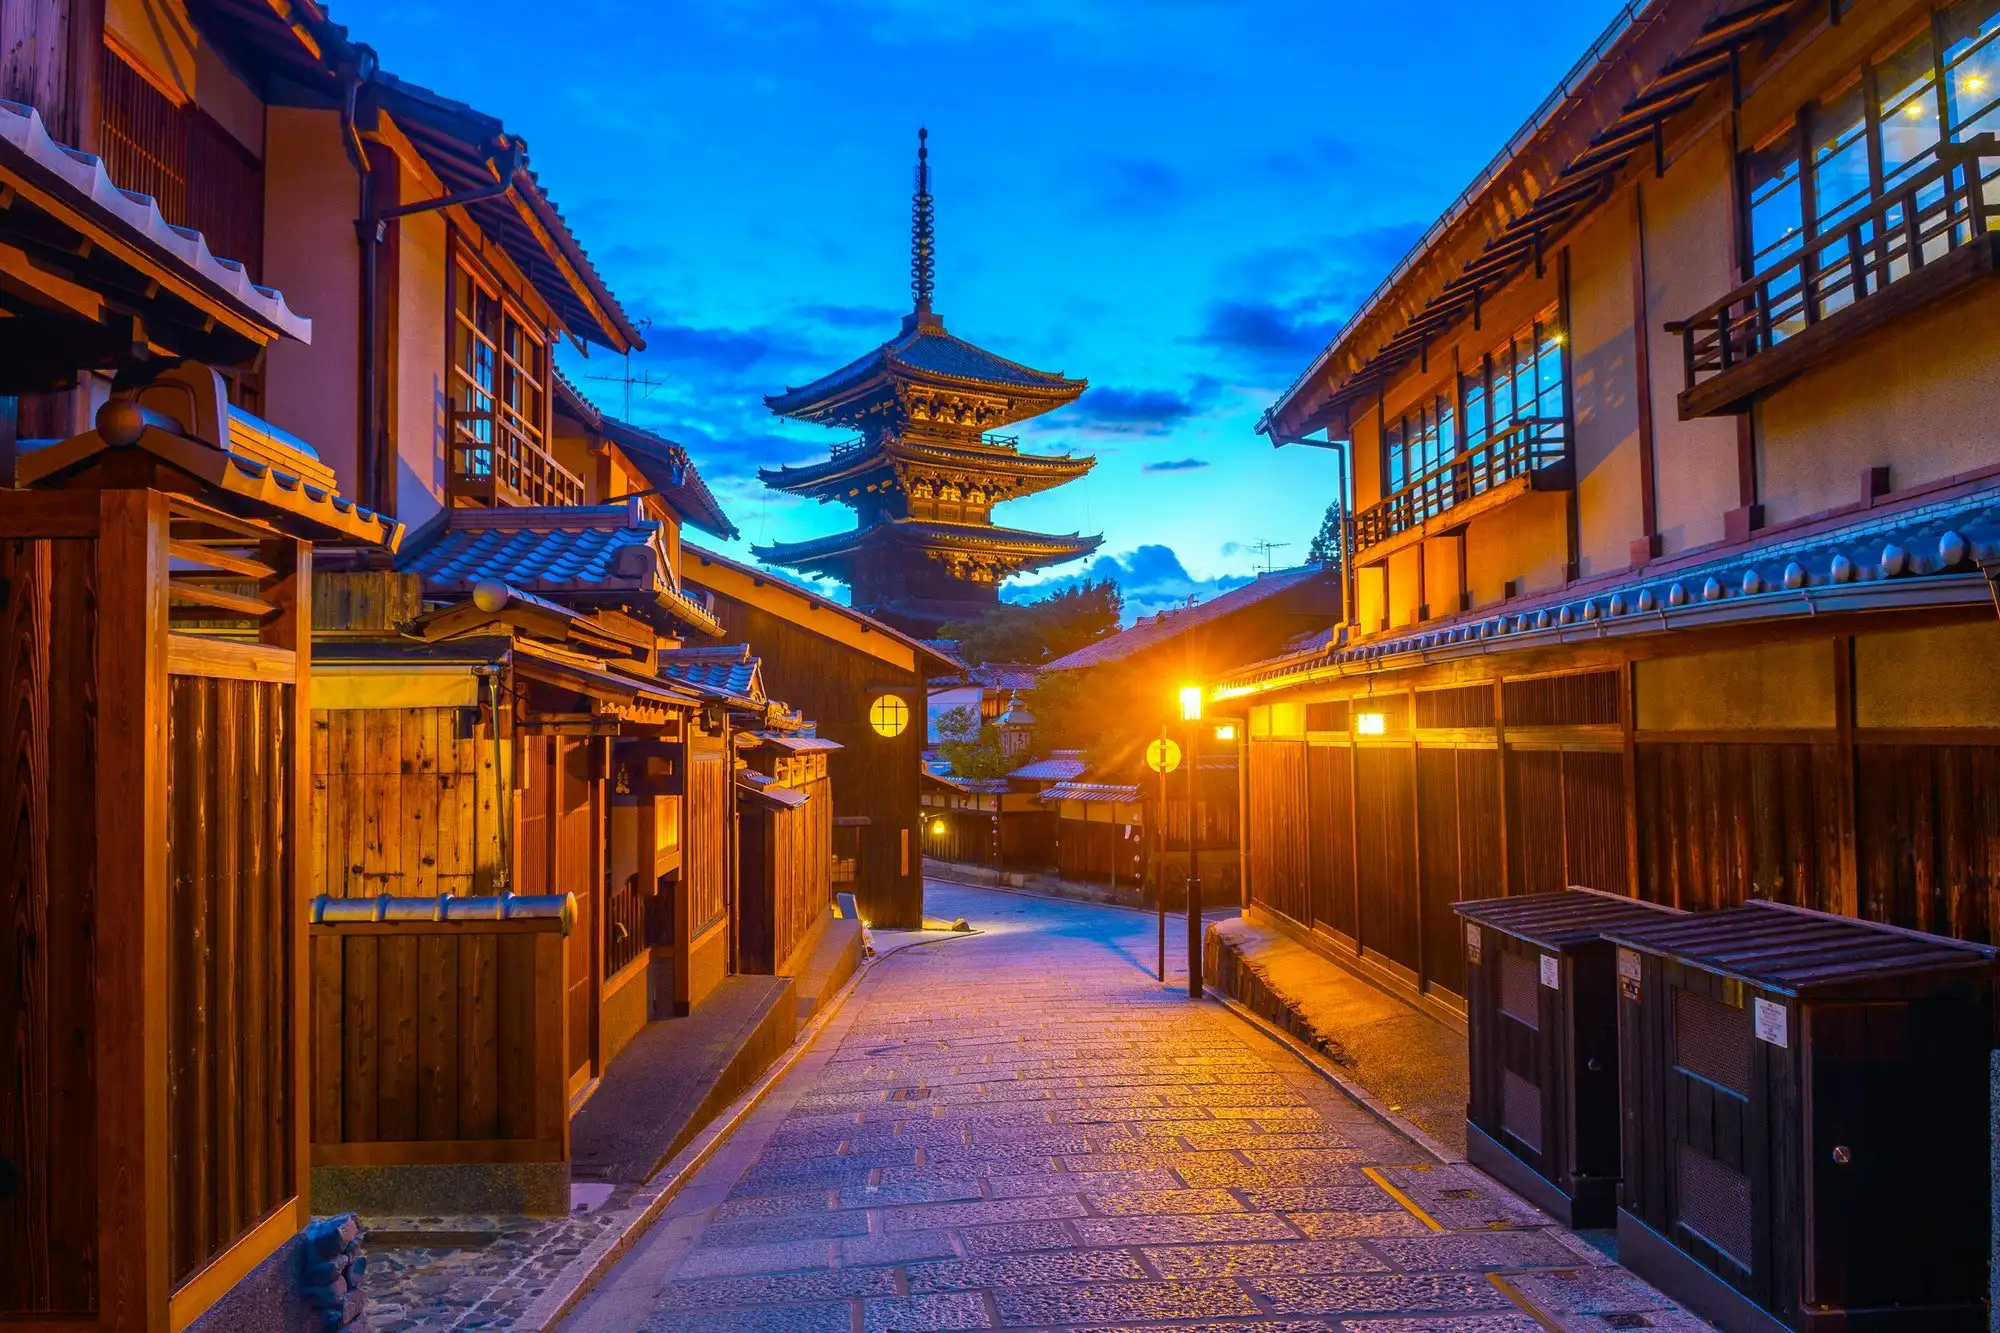 京都の夜の姿は映画かドラマのワンシーン 超絶美麗な4k映像で京都の幻想的な風景を堪能 観光 旅行 クールジャパンビデオ 日本の観光 旅行 グルメ 面白情報をまとめた動画キュレーションサイト Cool Japan Videos